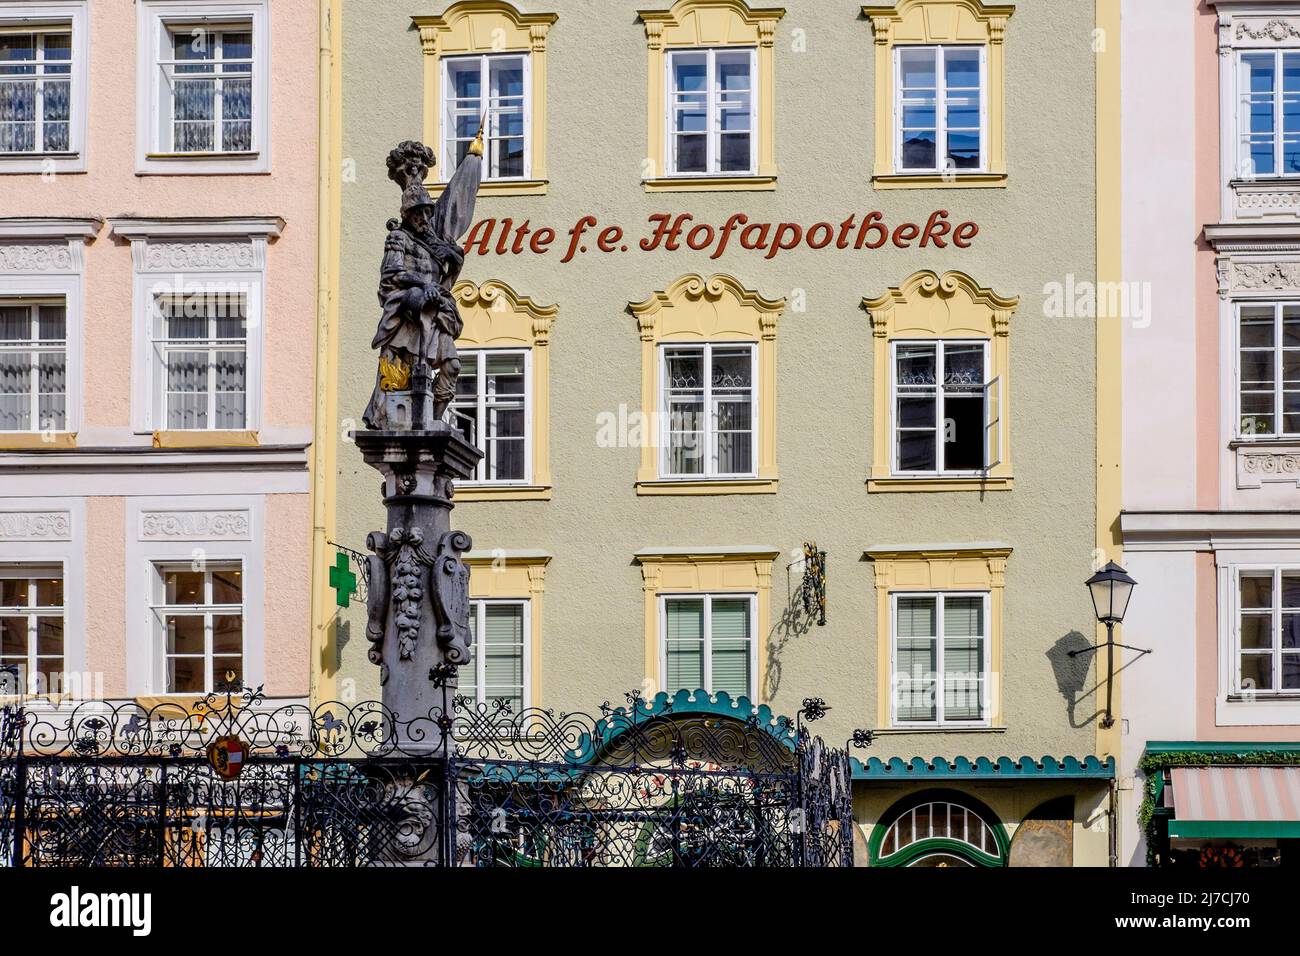 Alte Fürst-Erzbischöfliche Hofapotheke, Alter Markt, Salisburgo, Austria. Foto Stock